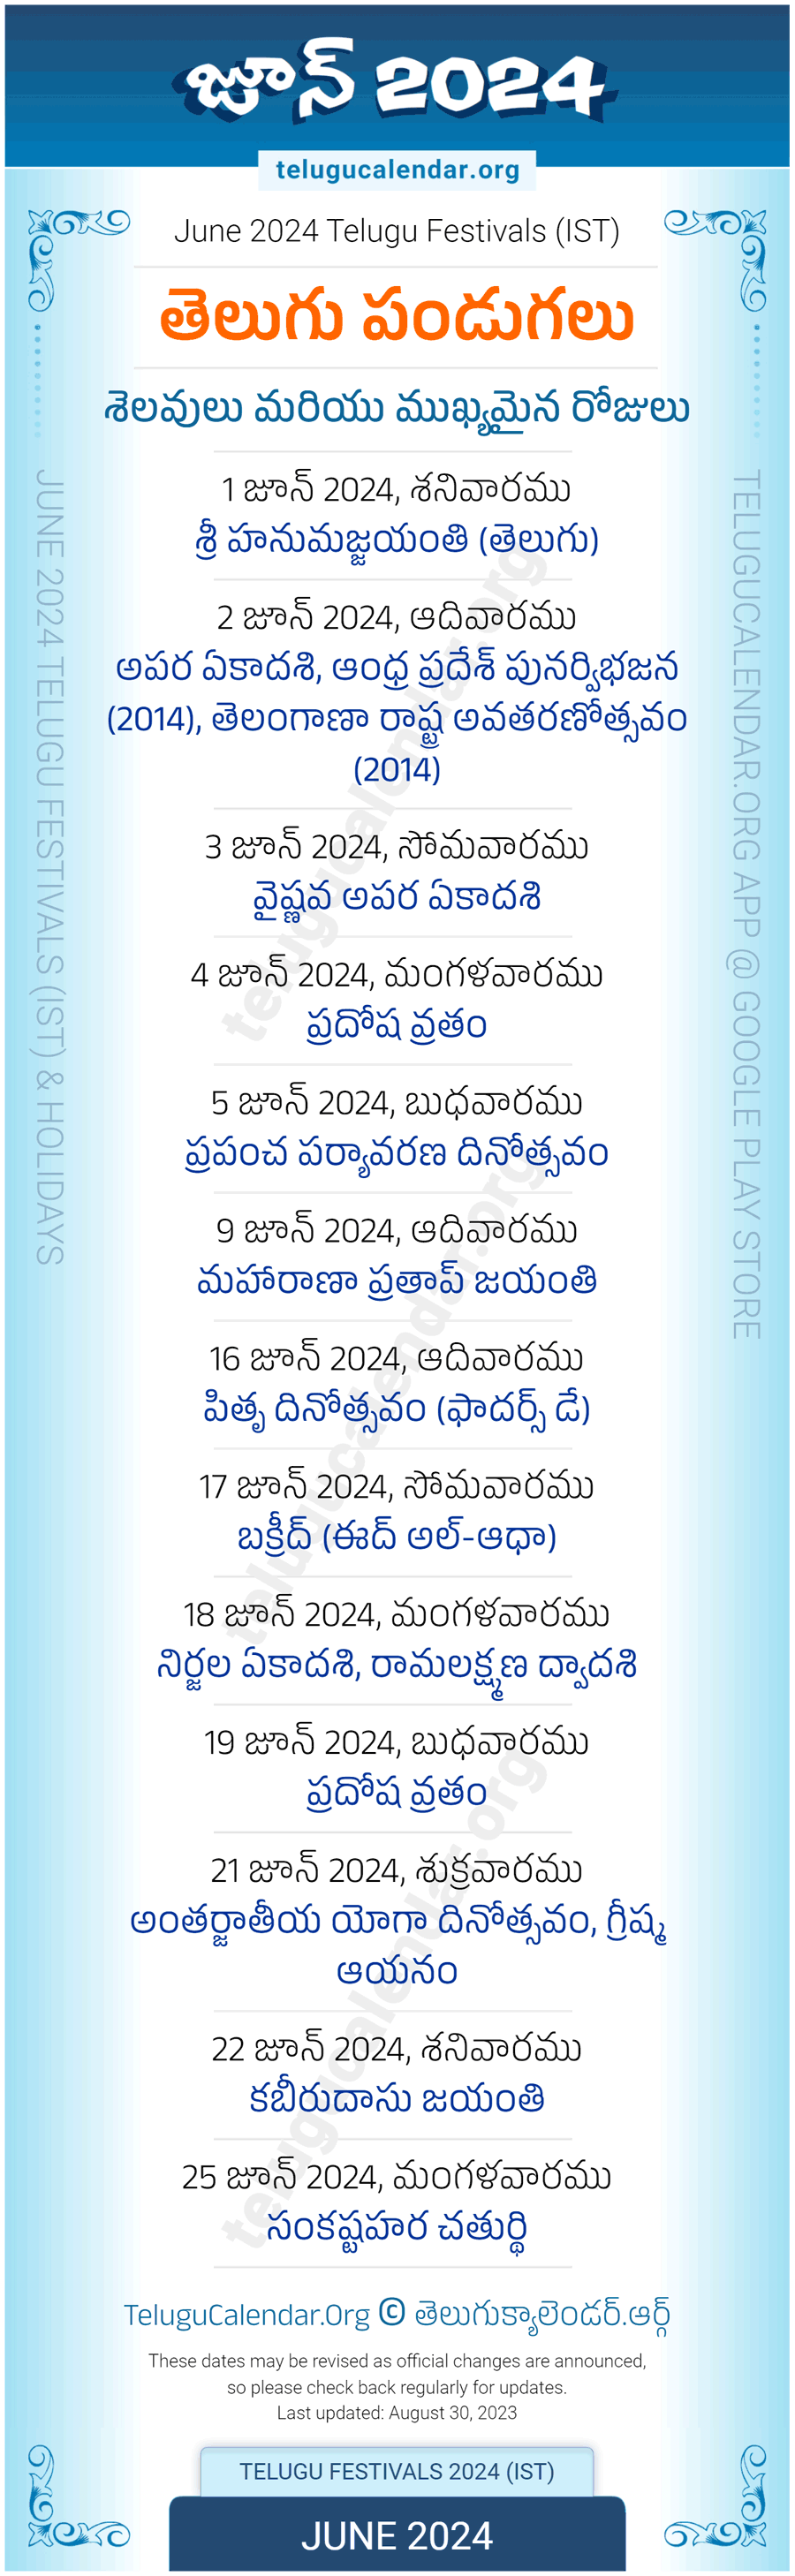 Telugu Festivals 2024 June